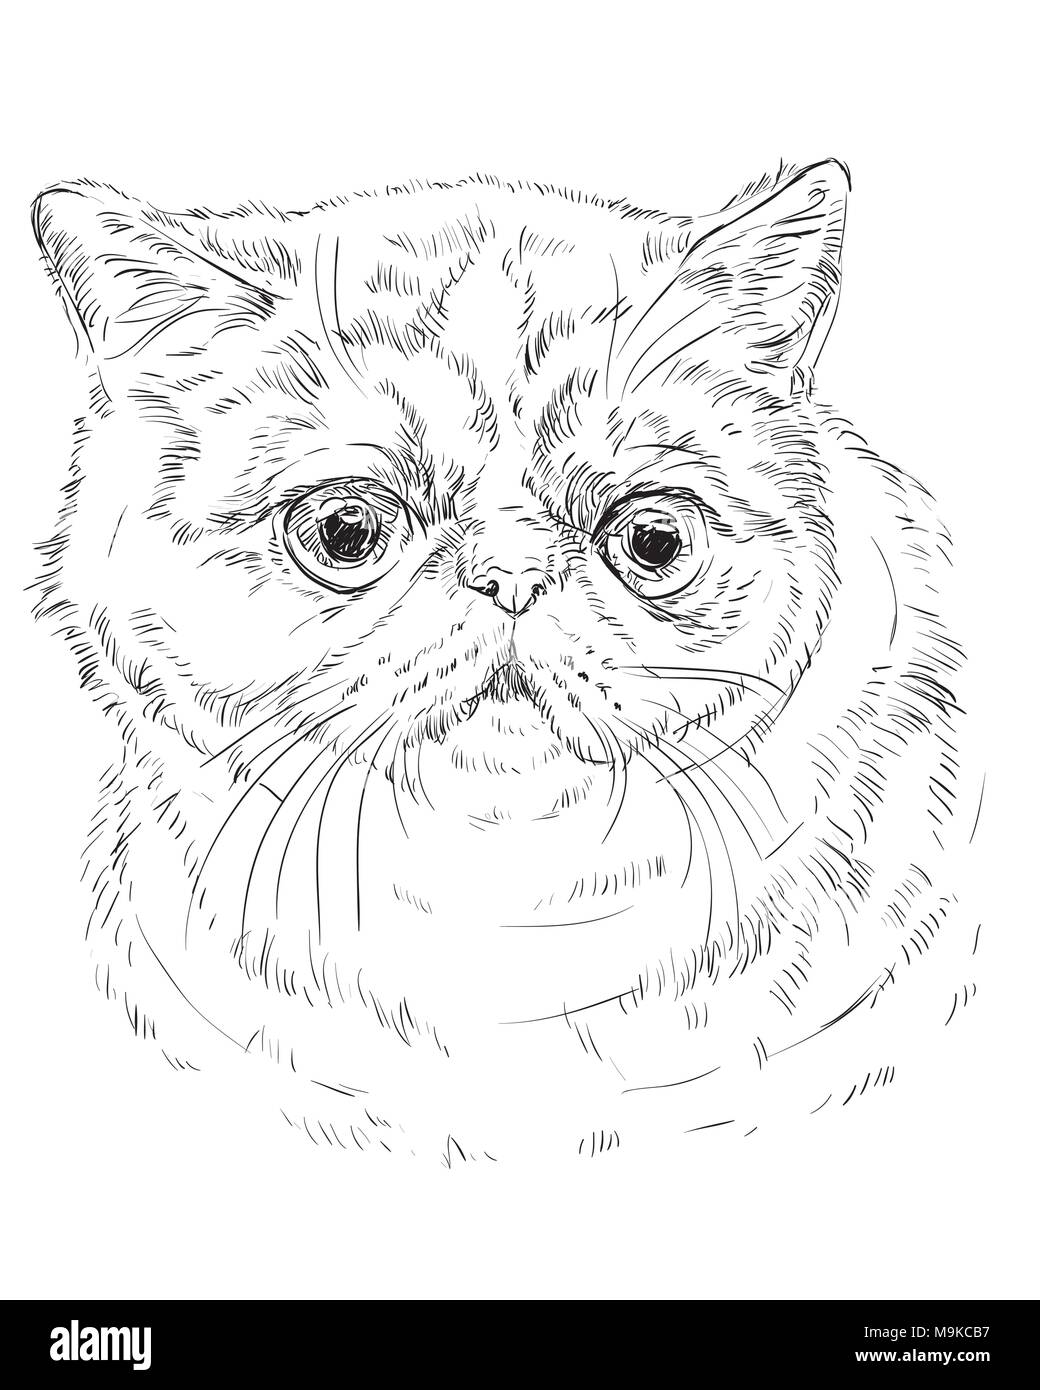 Vektor Kontur monochrome Portrait von neugierig und Exotic Shorthair Katze überrascht in der Farbe schwarz. Hand Zeichnung Abbildung isoliert auf weißem backgroun Stock Vektor